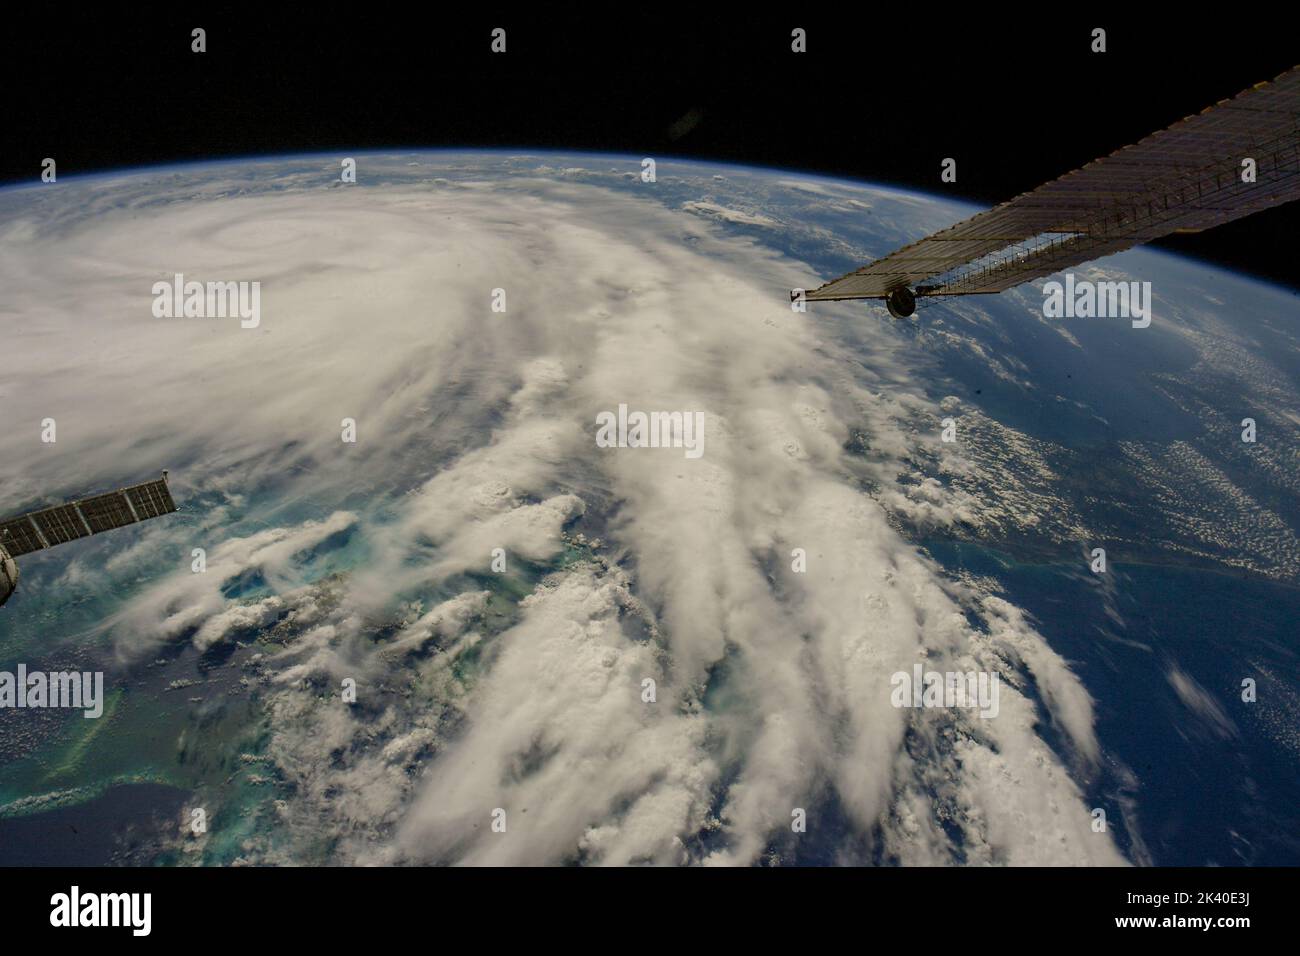 MAR DEI CARAIBI - 26 settembre 2020 - gli astronauti sulla Stazione spaziale Internazionale catturano questa drammatica immagine dell'uragano Ian in direzione del co Foto Stock